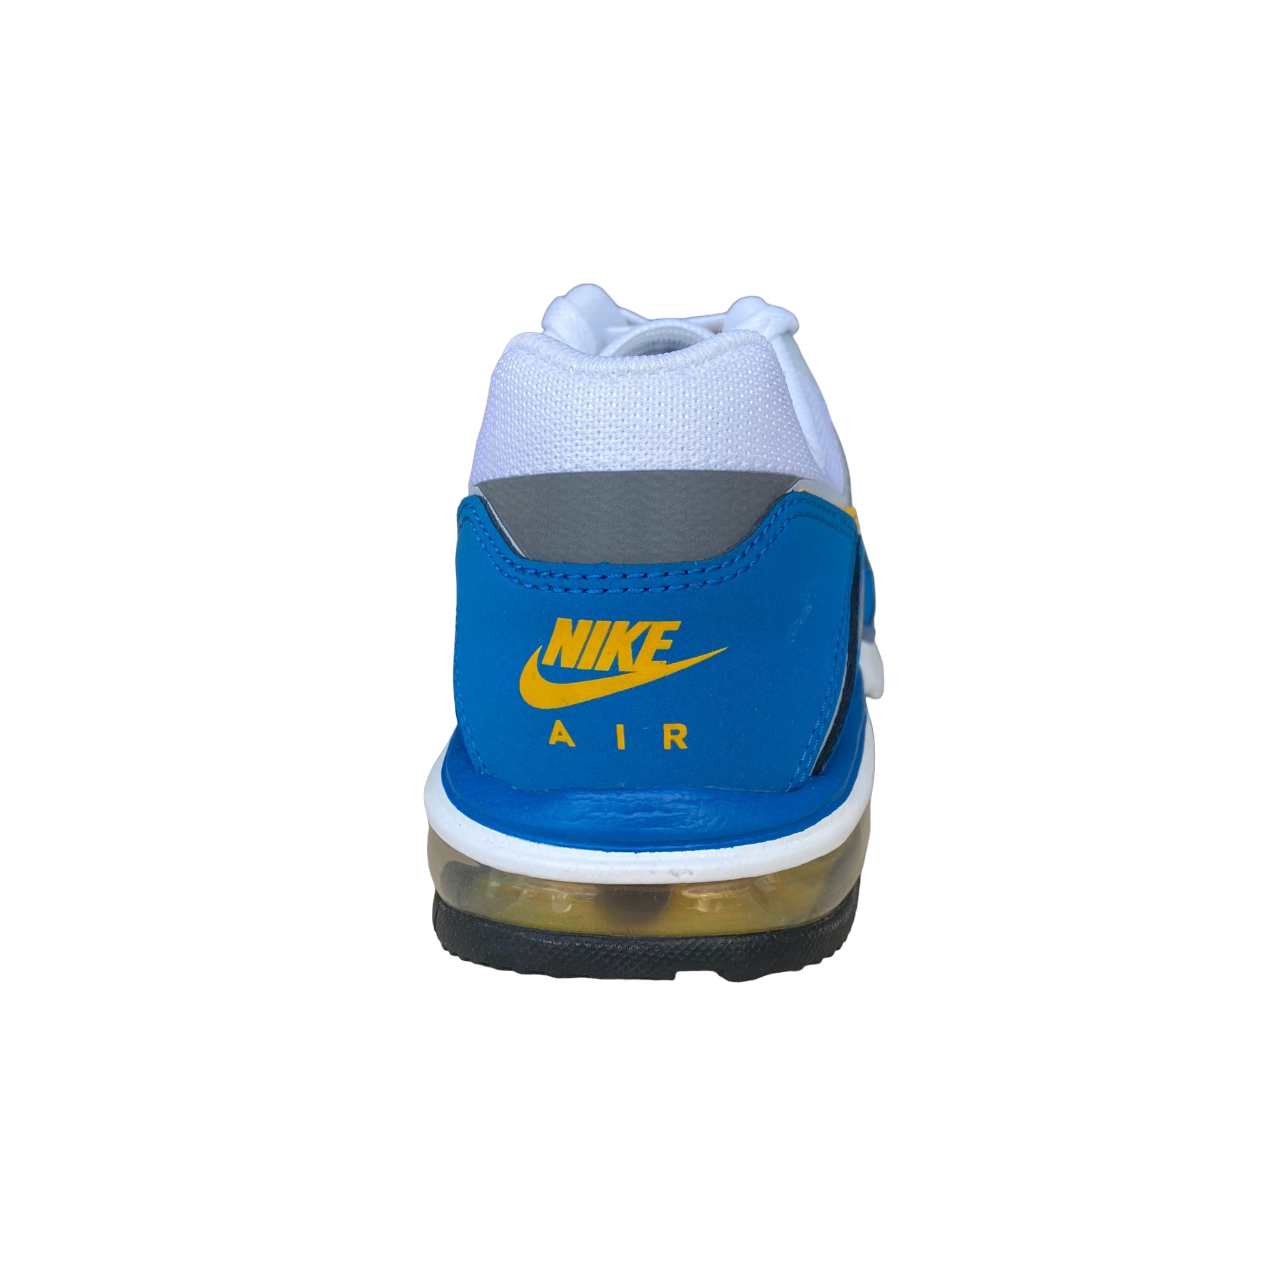 Nike sneakers da uomo Air Max Rebel 610639 400 bianco-azzurro-grigio